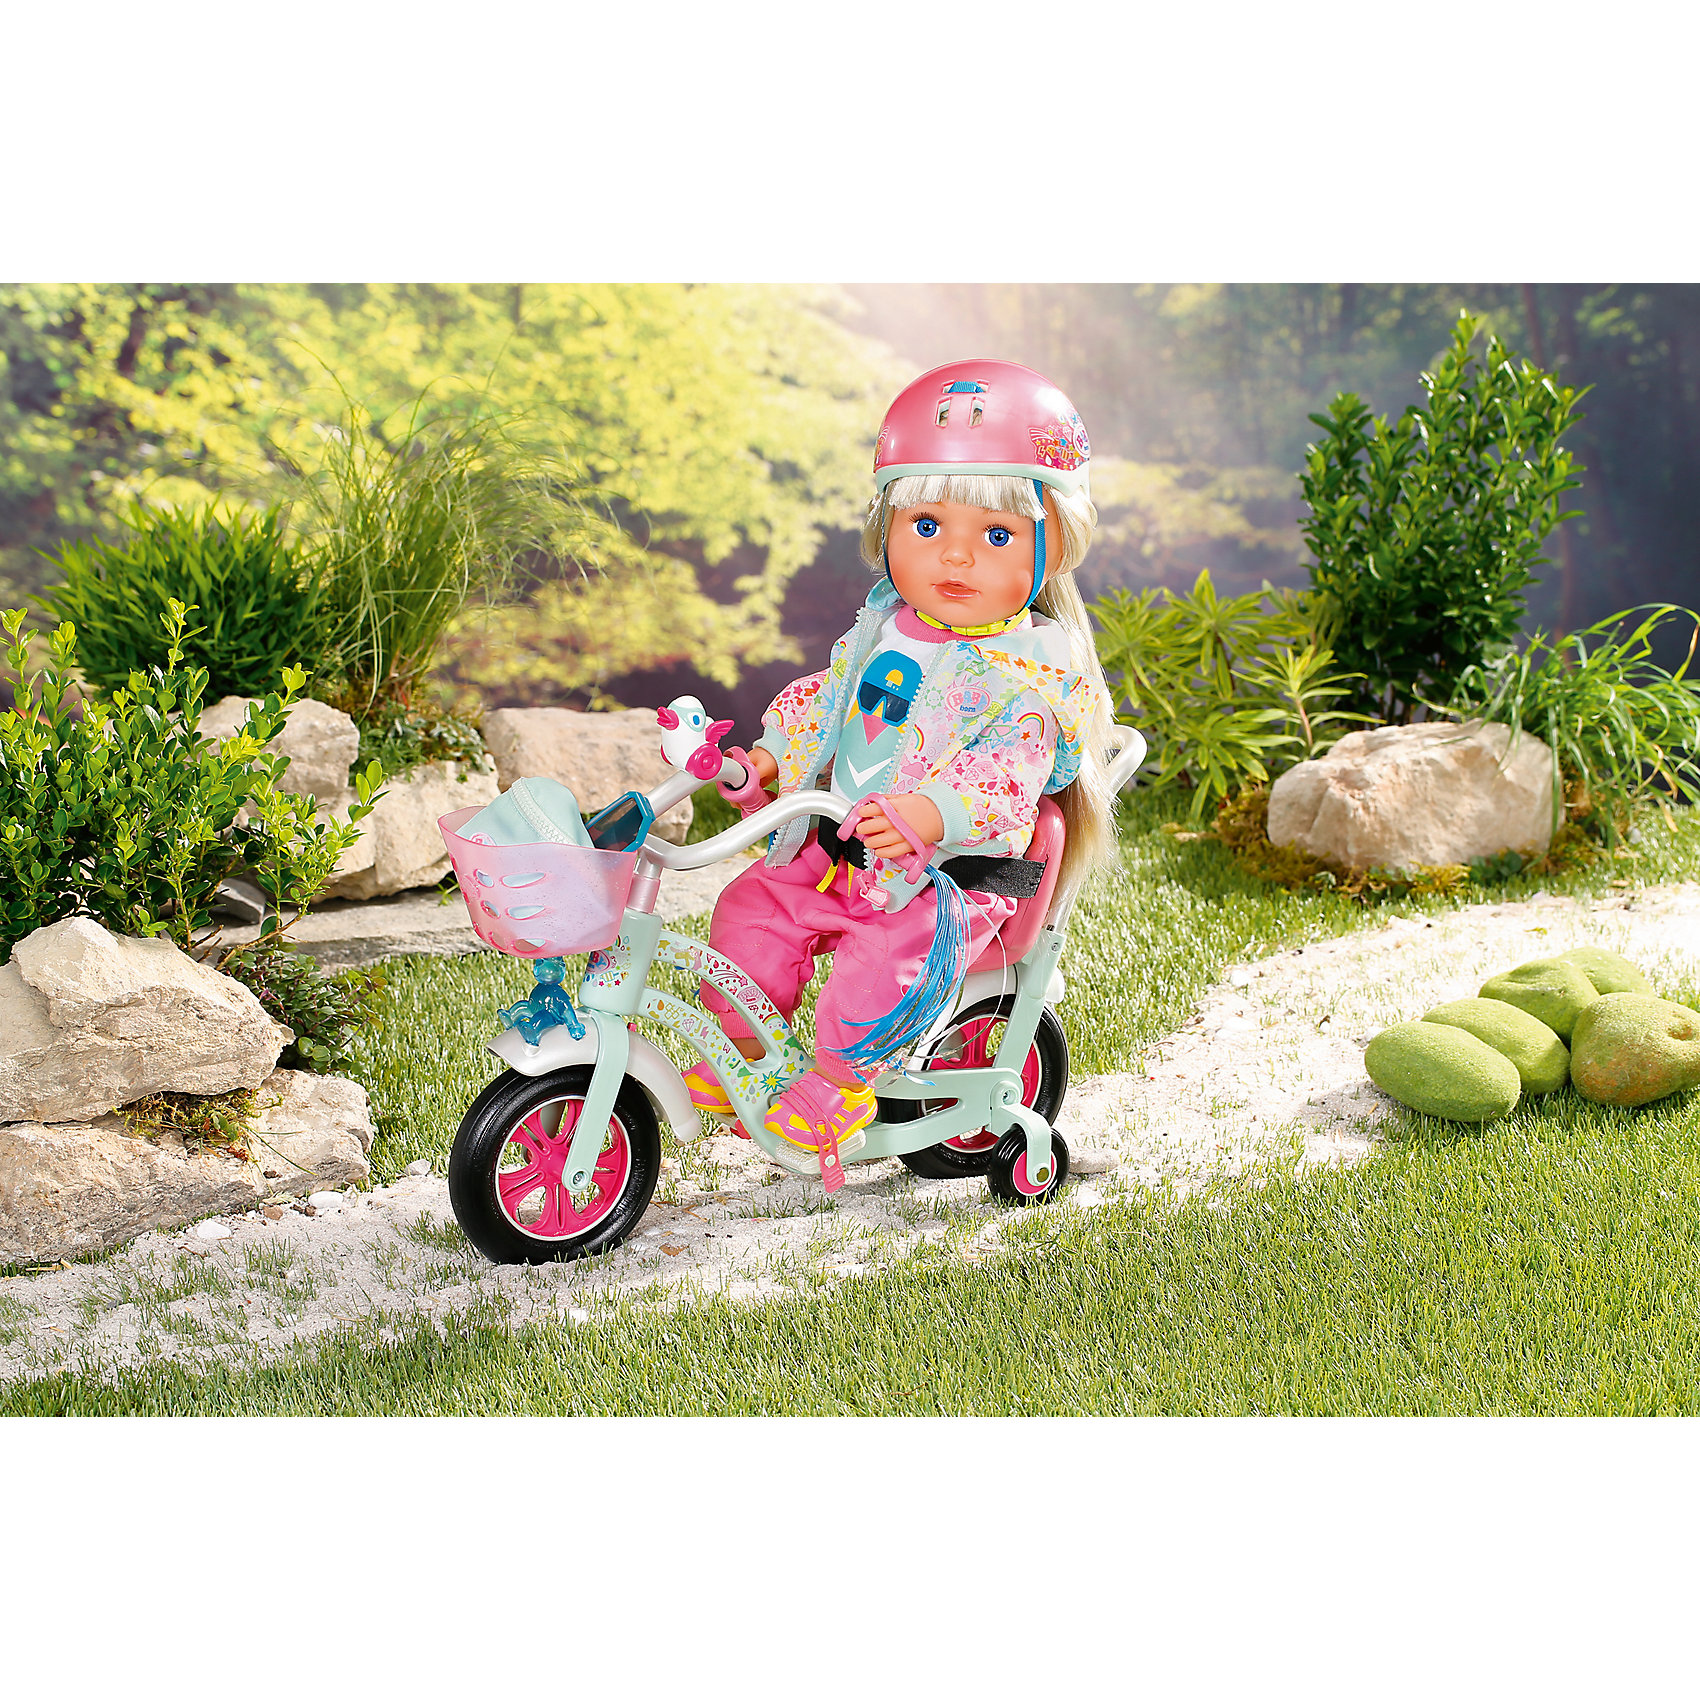 кресло для велосипеда для куклы